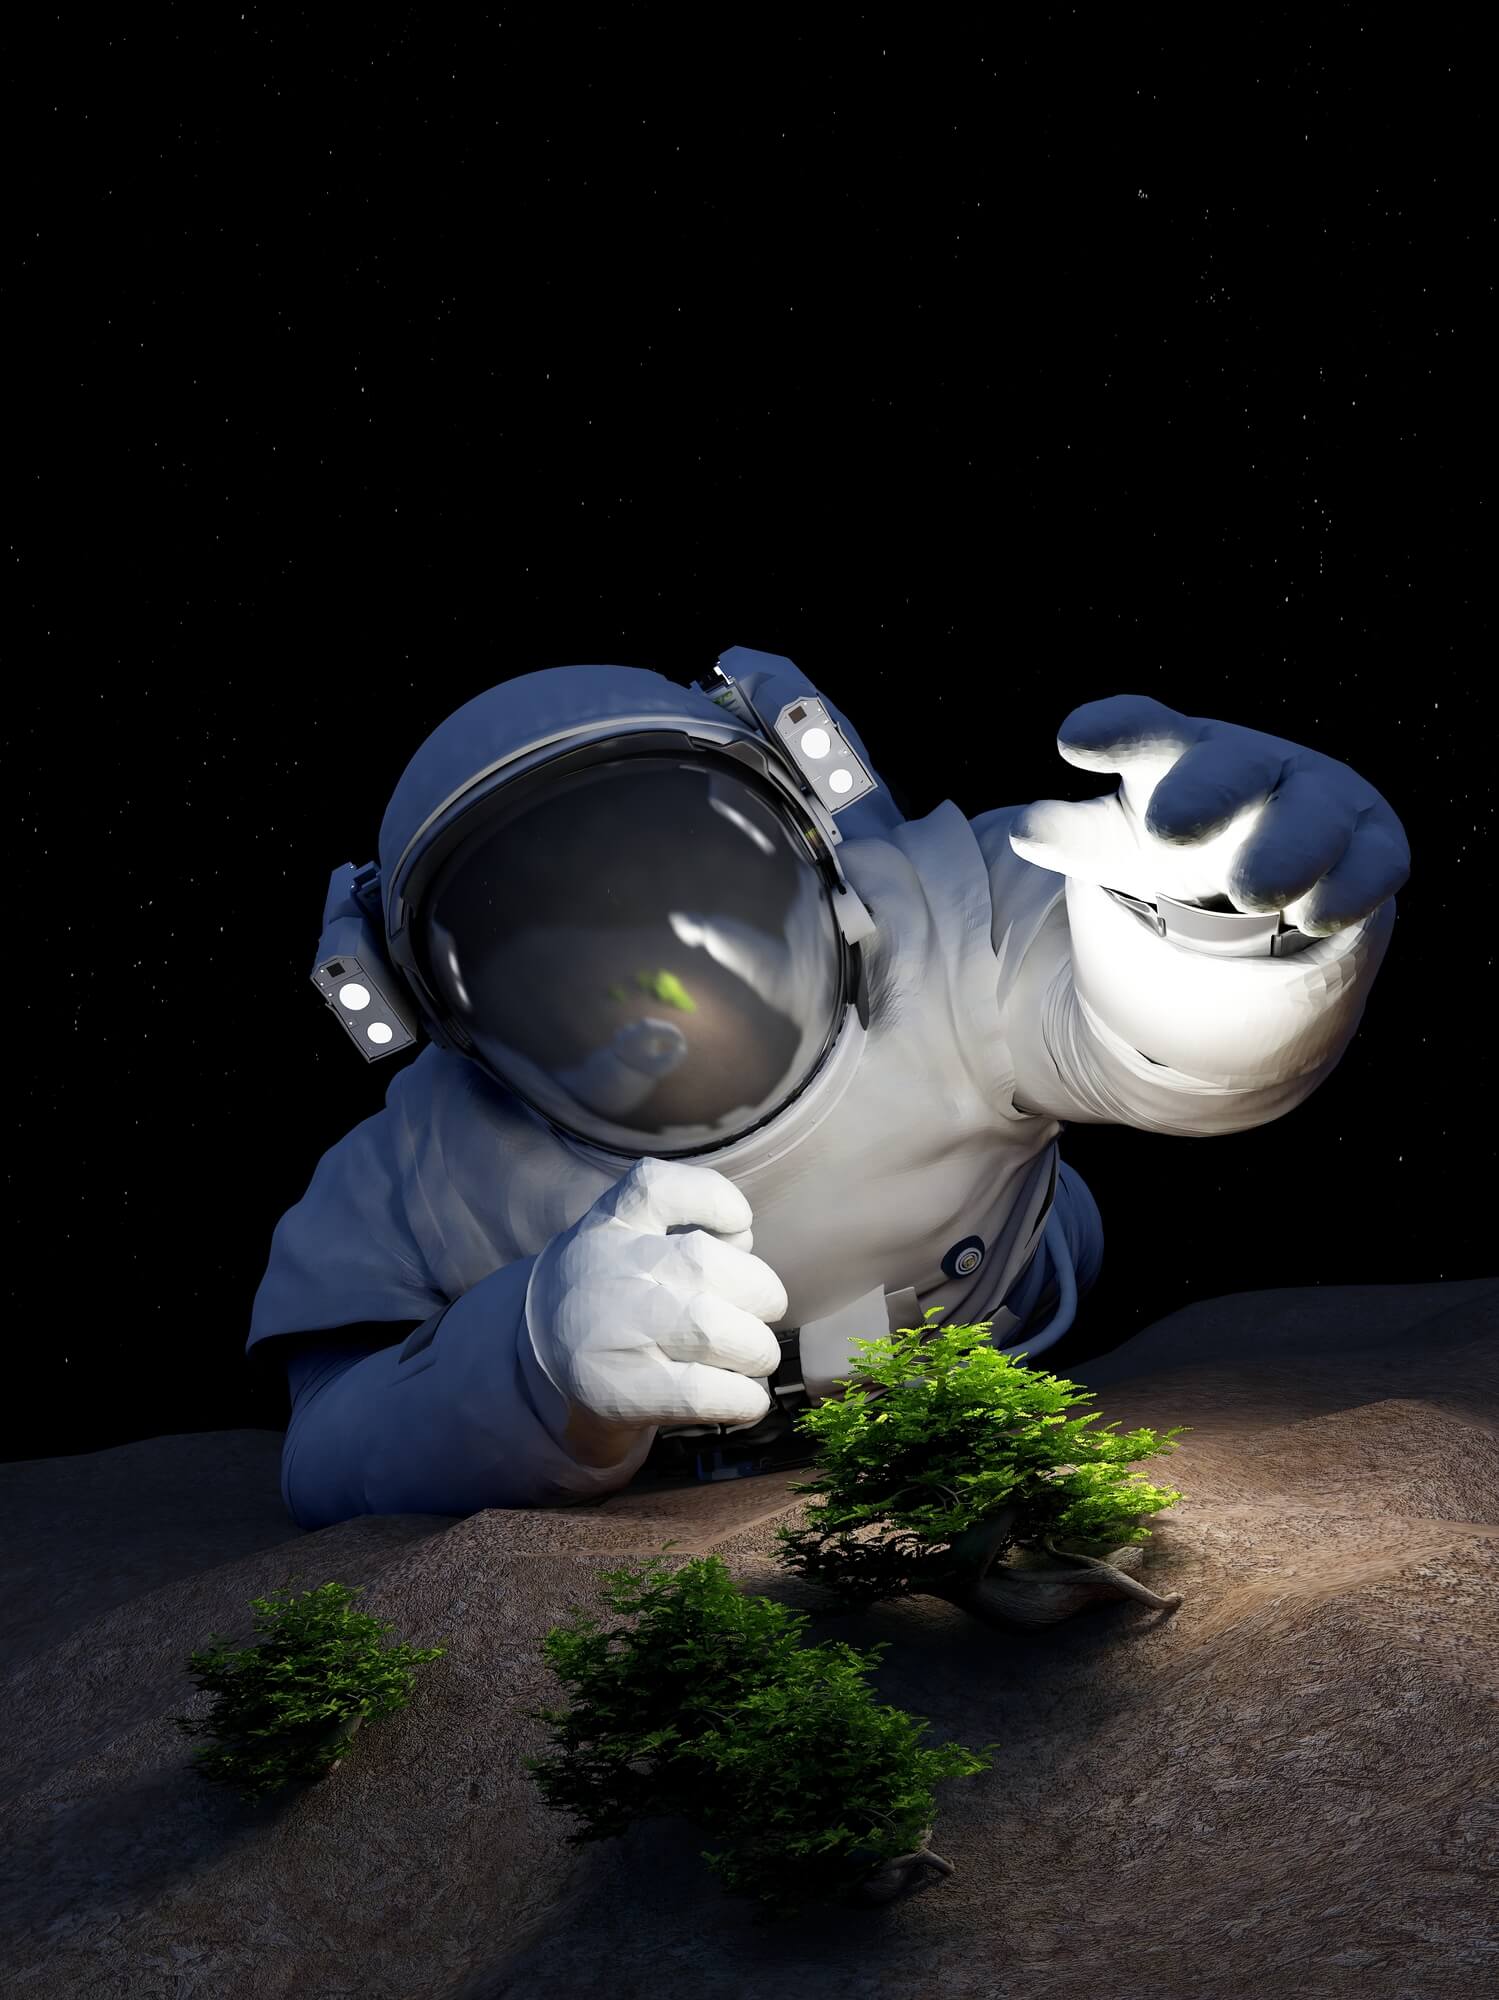 An astronaut grows plants on the moon. Illustration: depositphotos.com